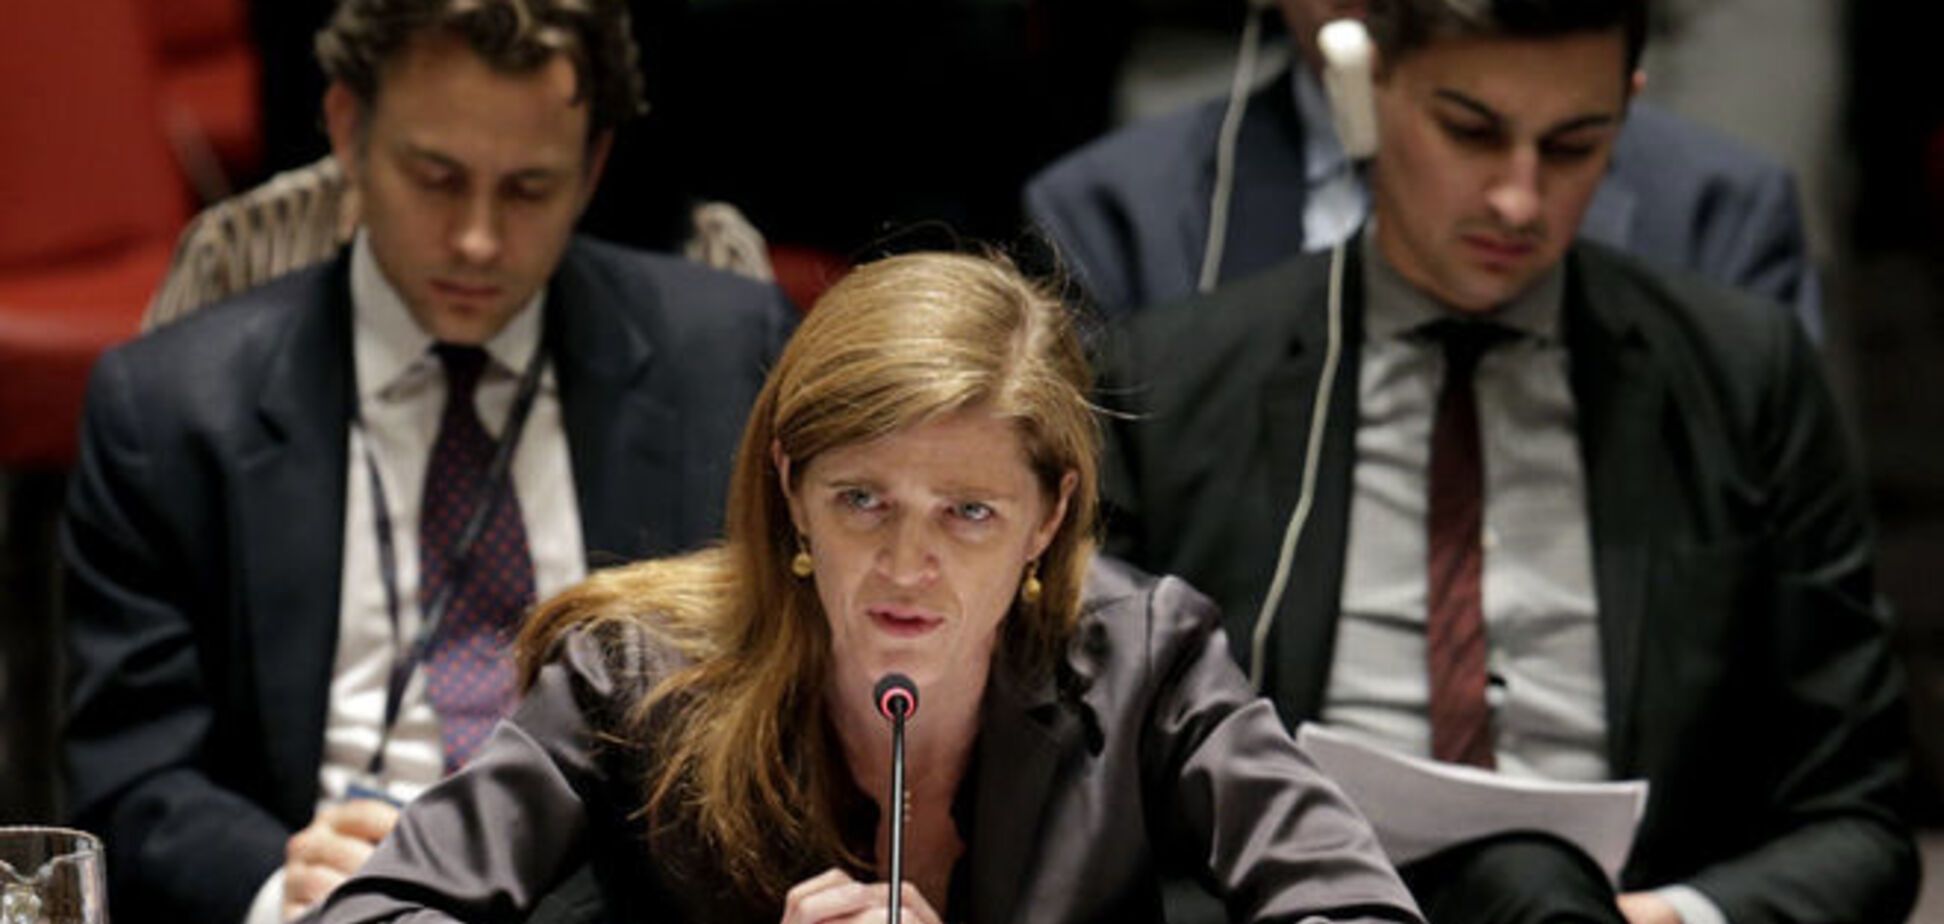 Постпред США в ООН Пауэр хочет посмотреть на реформы в Украине